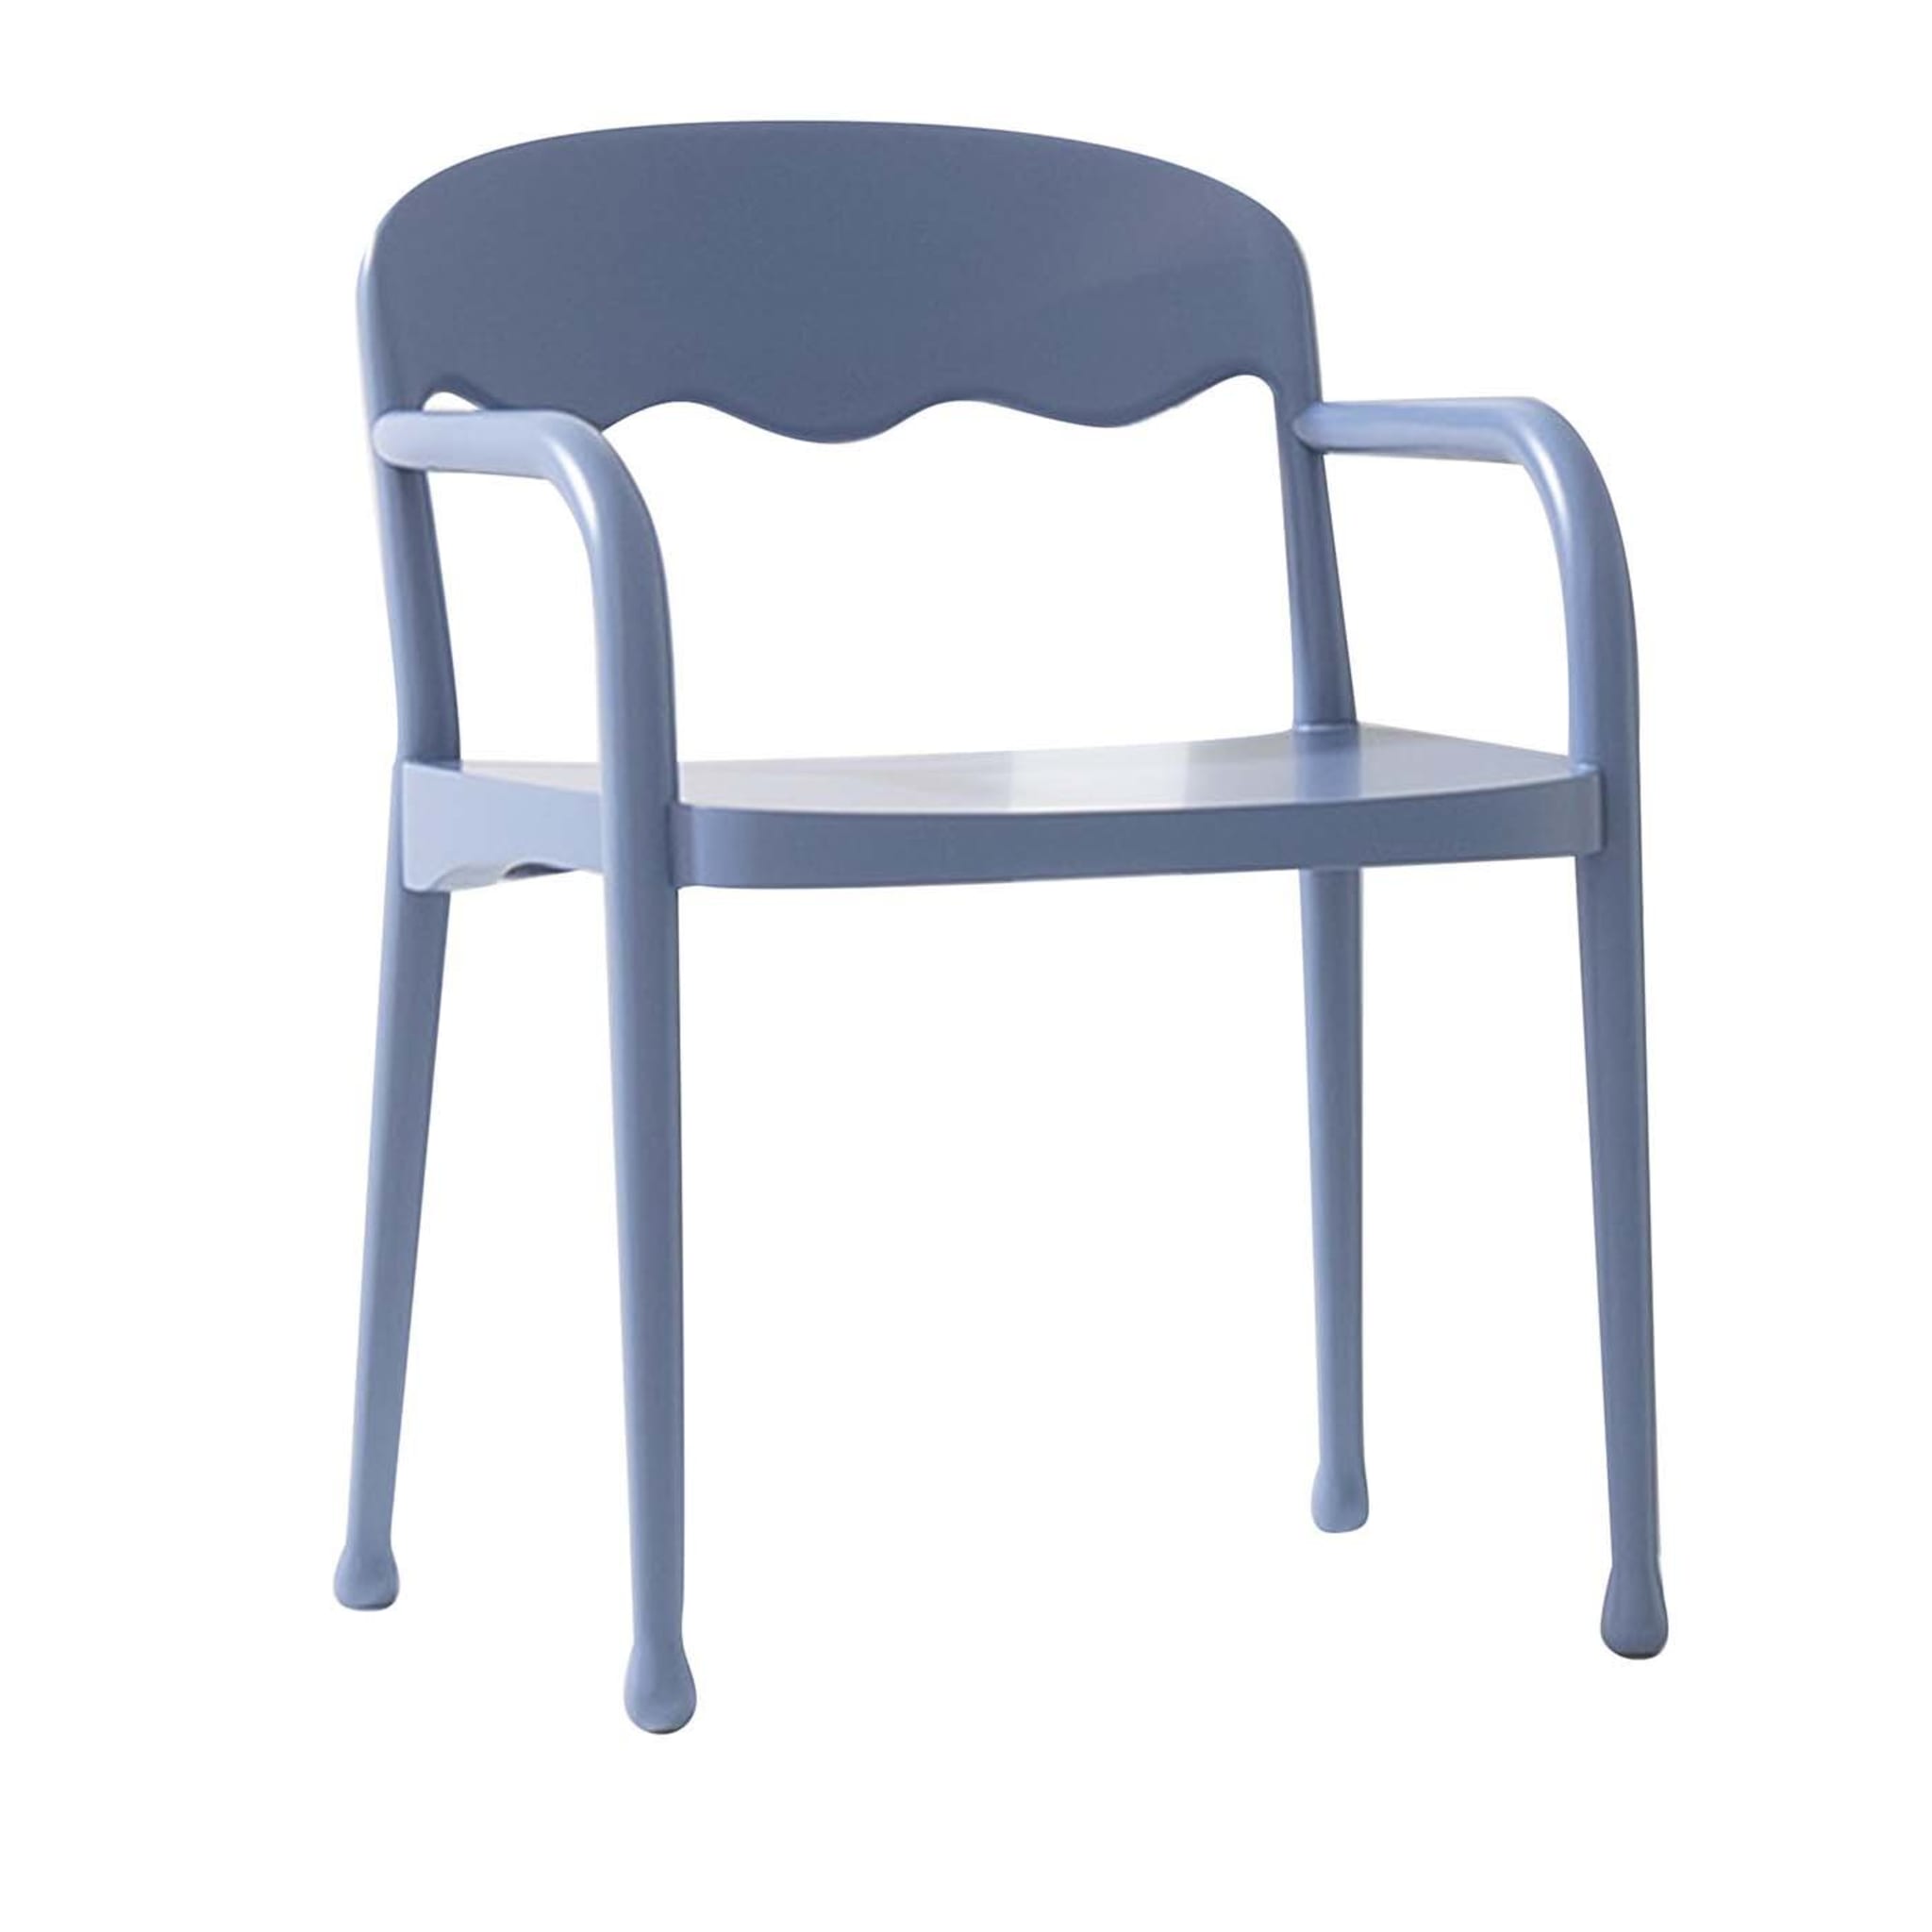 Frisée 252 Light Blue Chair by Cristina Celestino - Main view